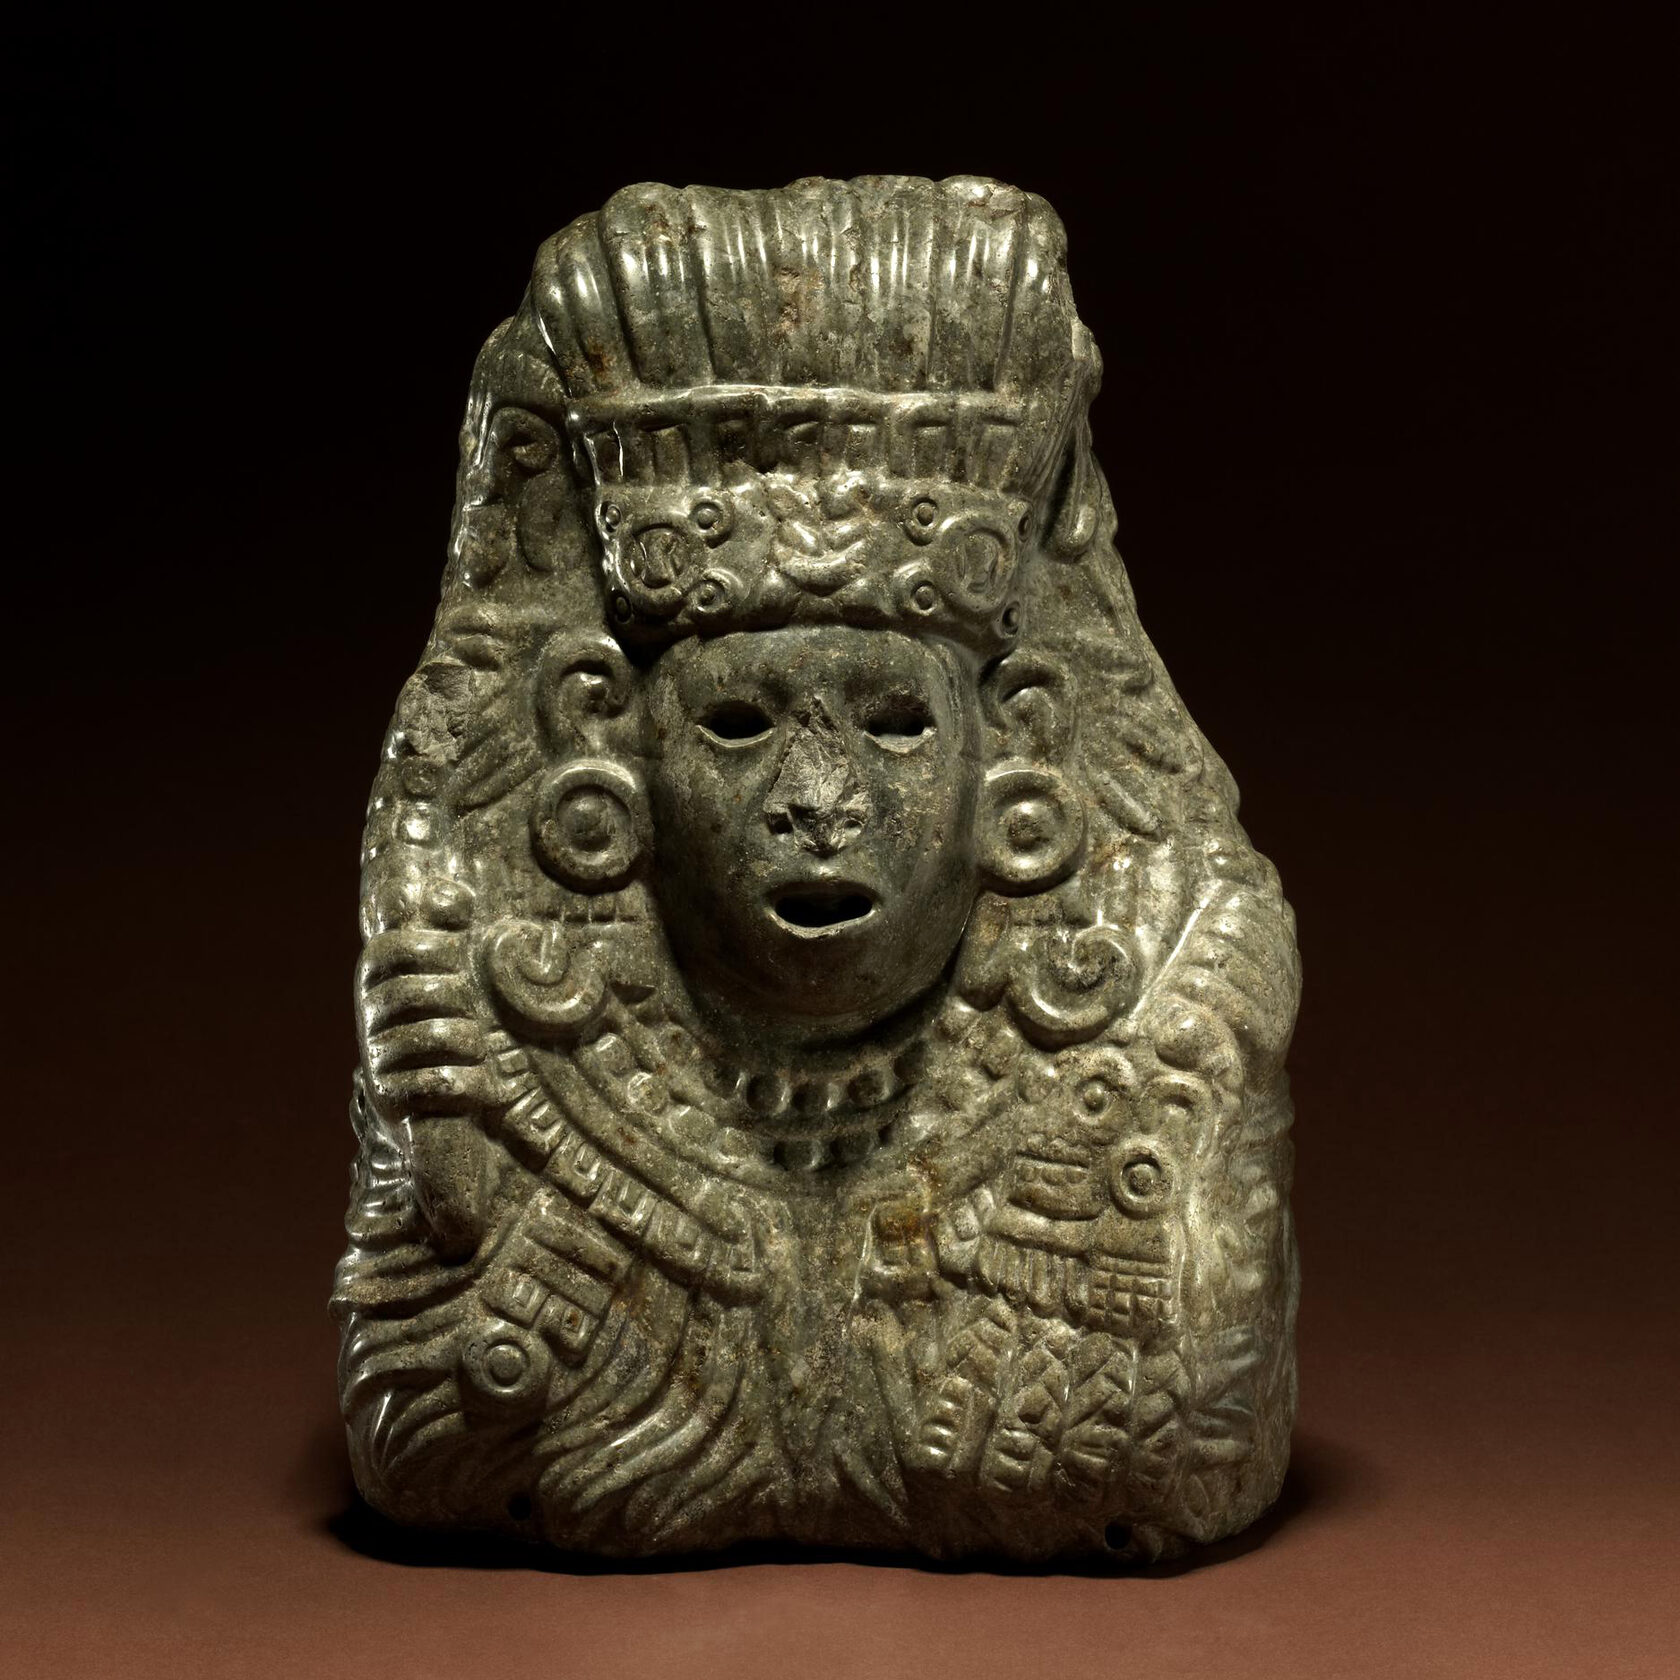 Кецалькоатль. Ацтеки, 1325-1521 гг. н.э. Коллекция British Museum.